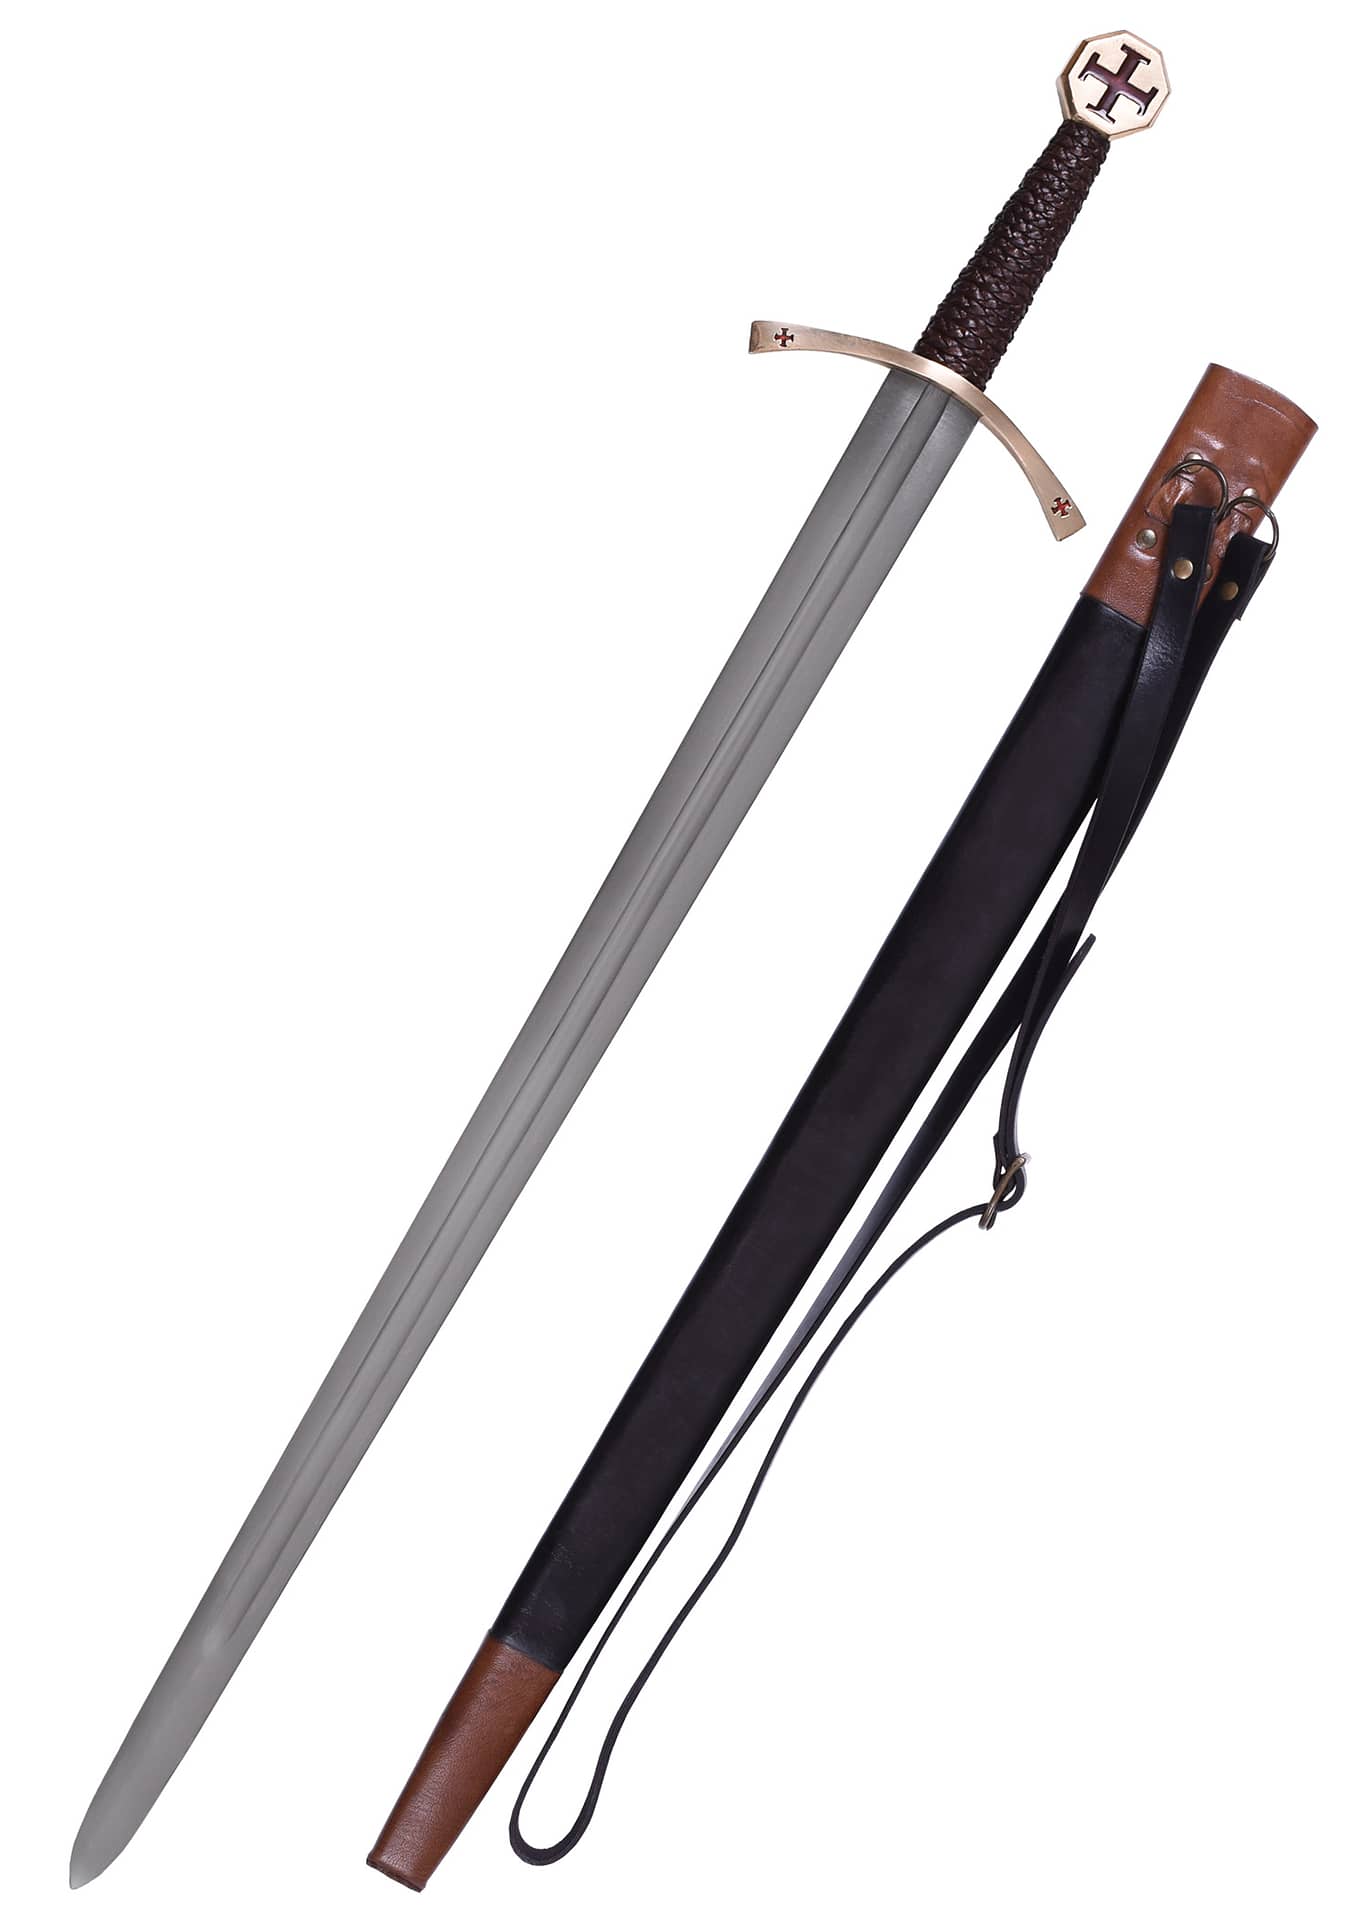 Espada templaría con cruz de garras, incluida vaina 0116328801 - Espadas y Más